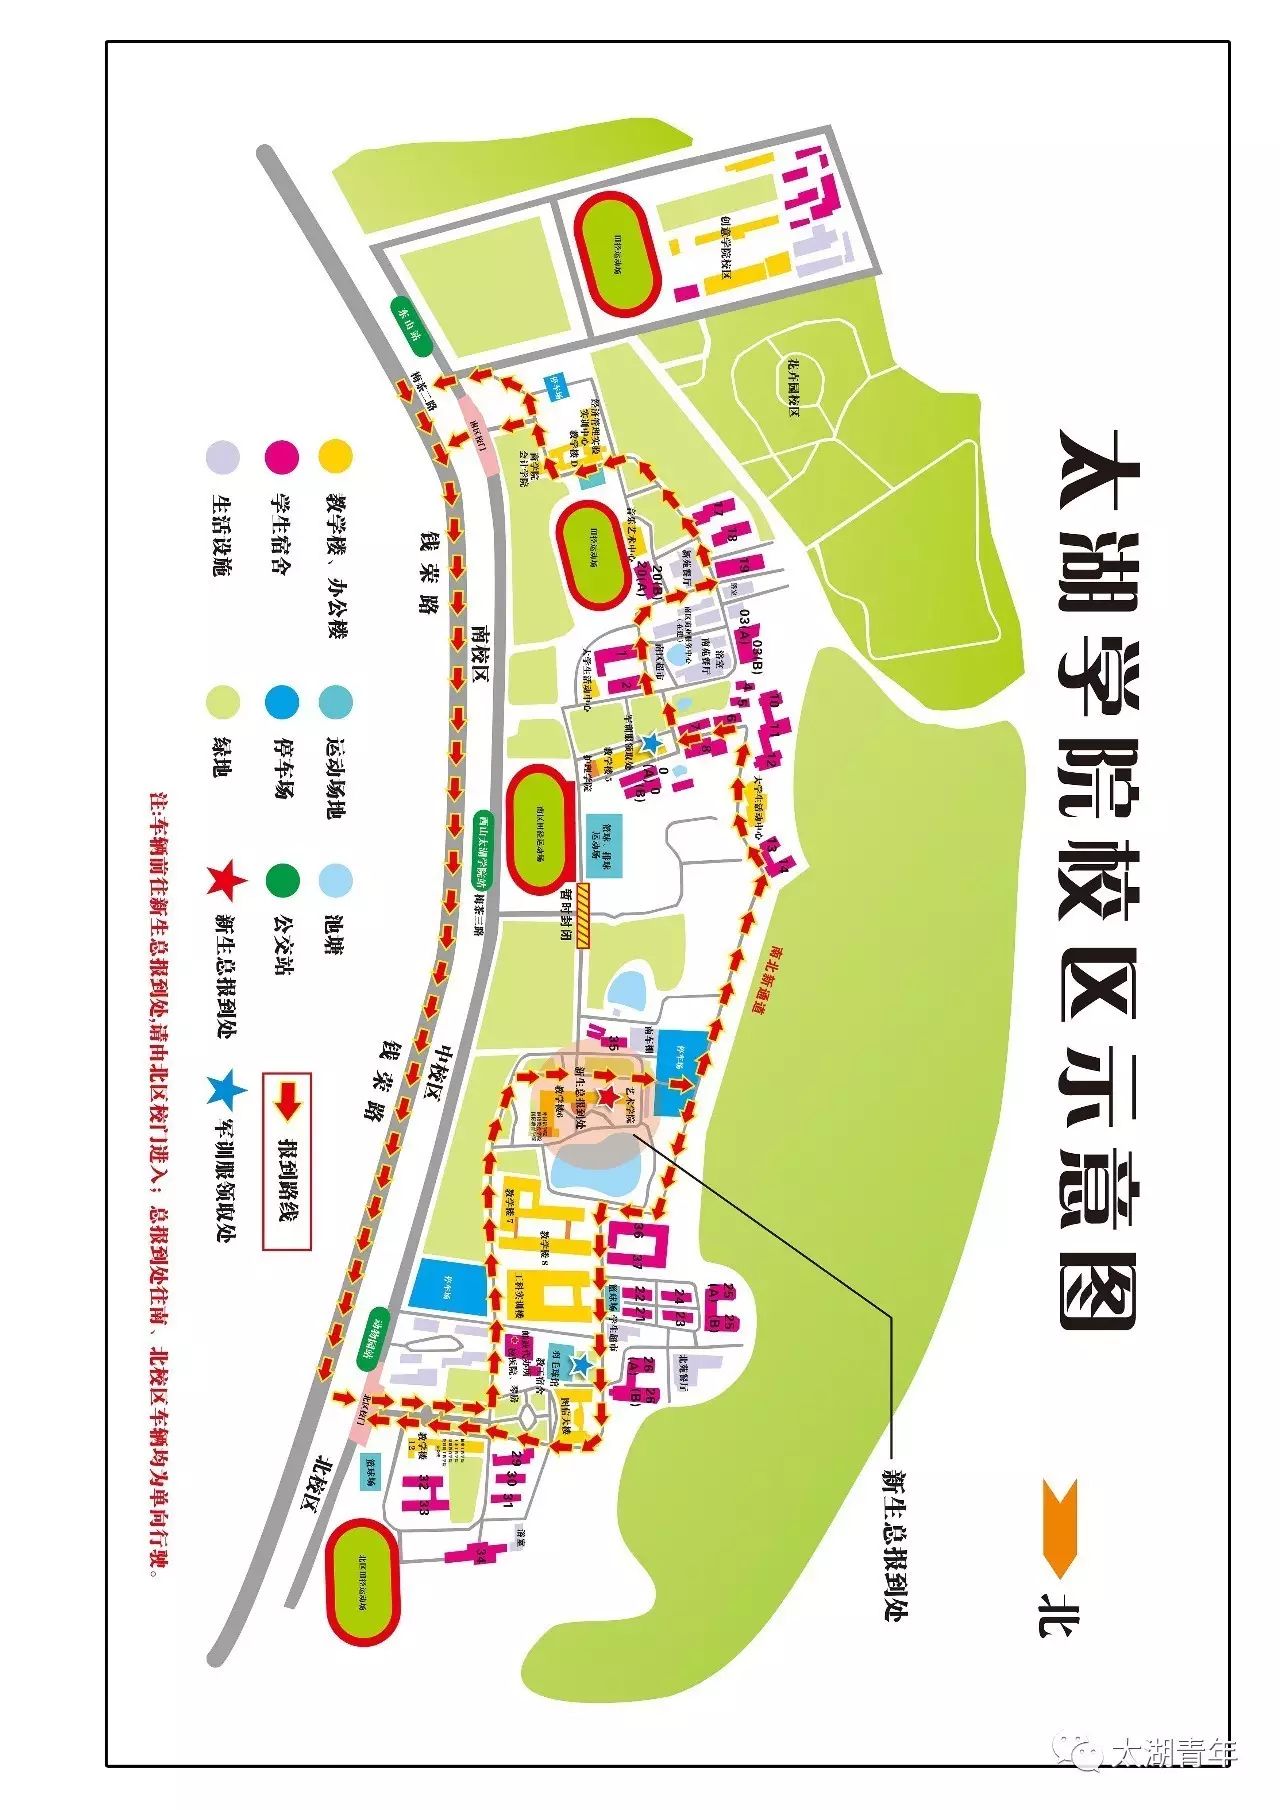 无锡太湖学院地图高清图片